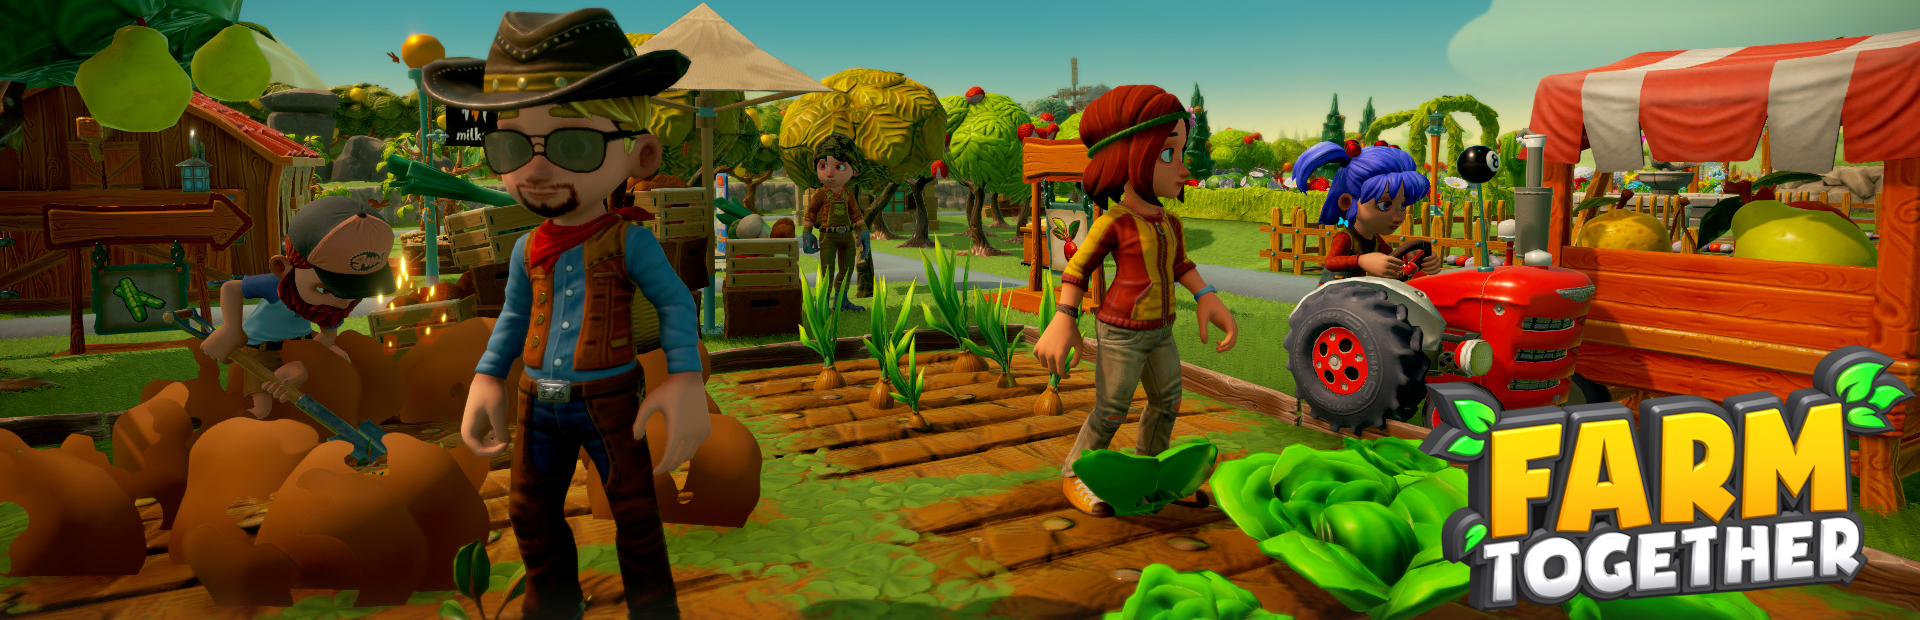 دانلود بازی Farm Together برای پی سی | گیمباتو